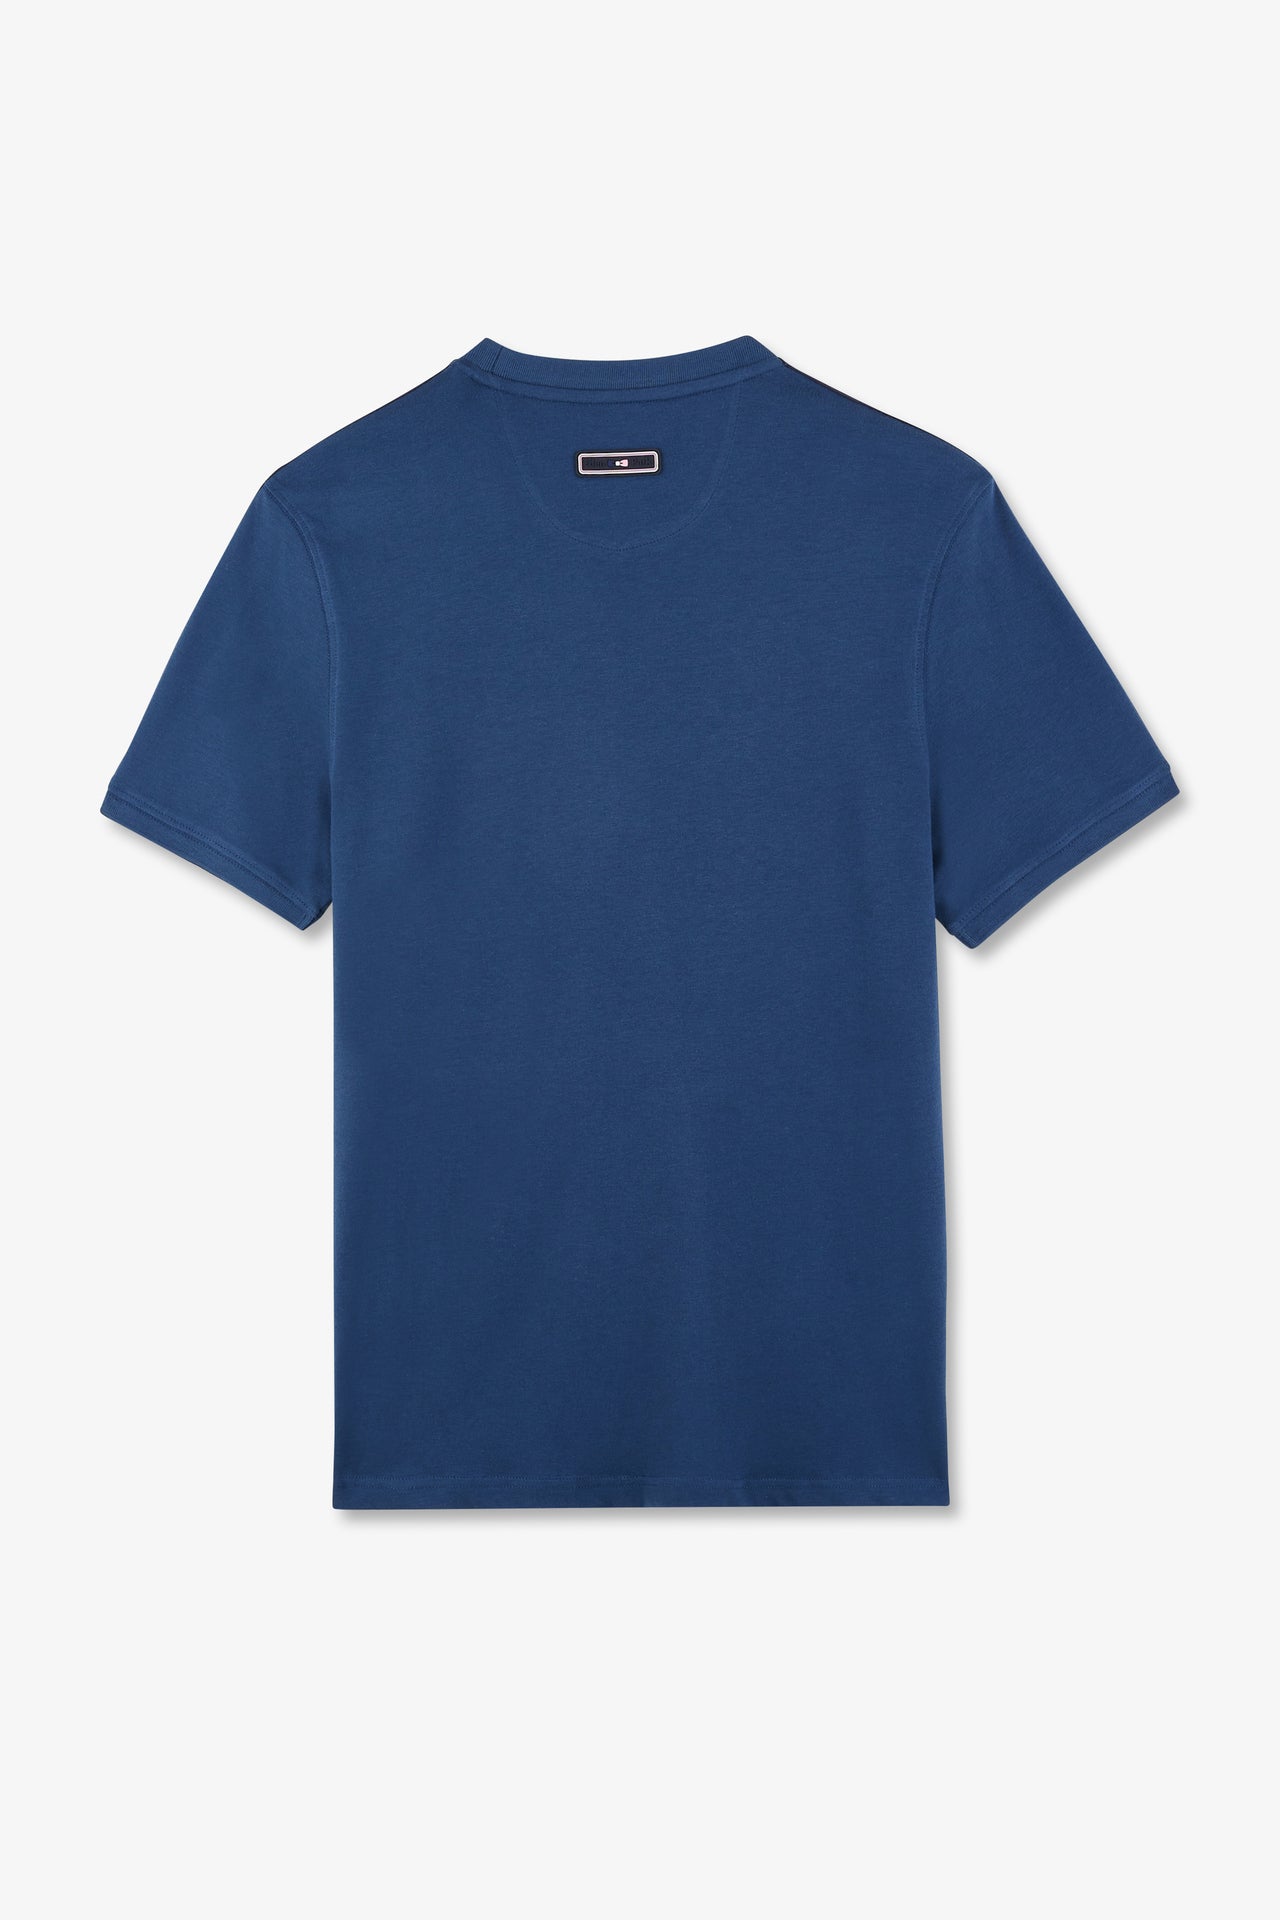 T-shirt manches courtes marine en coton galons épaules tricolores